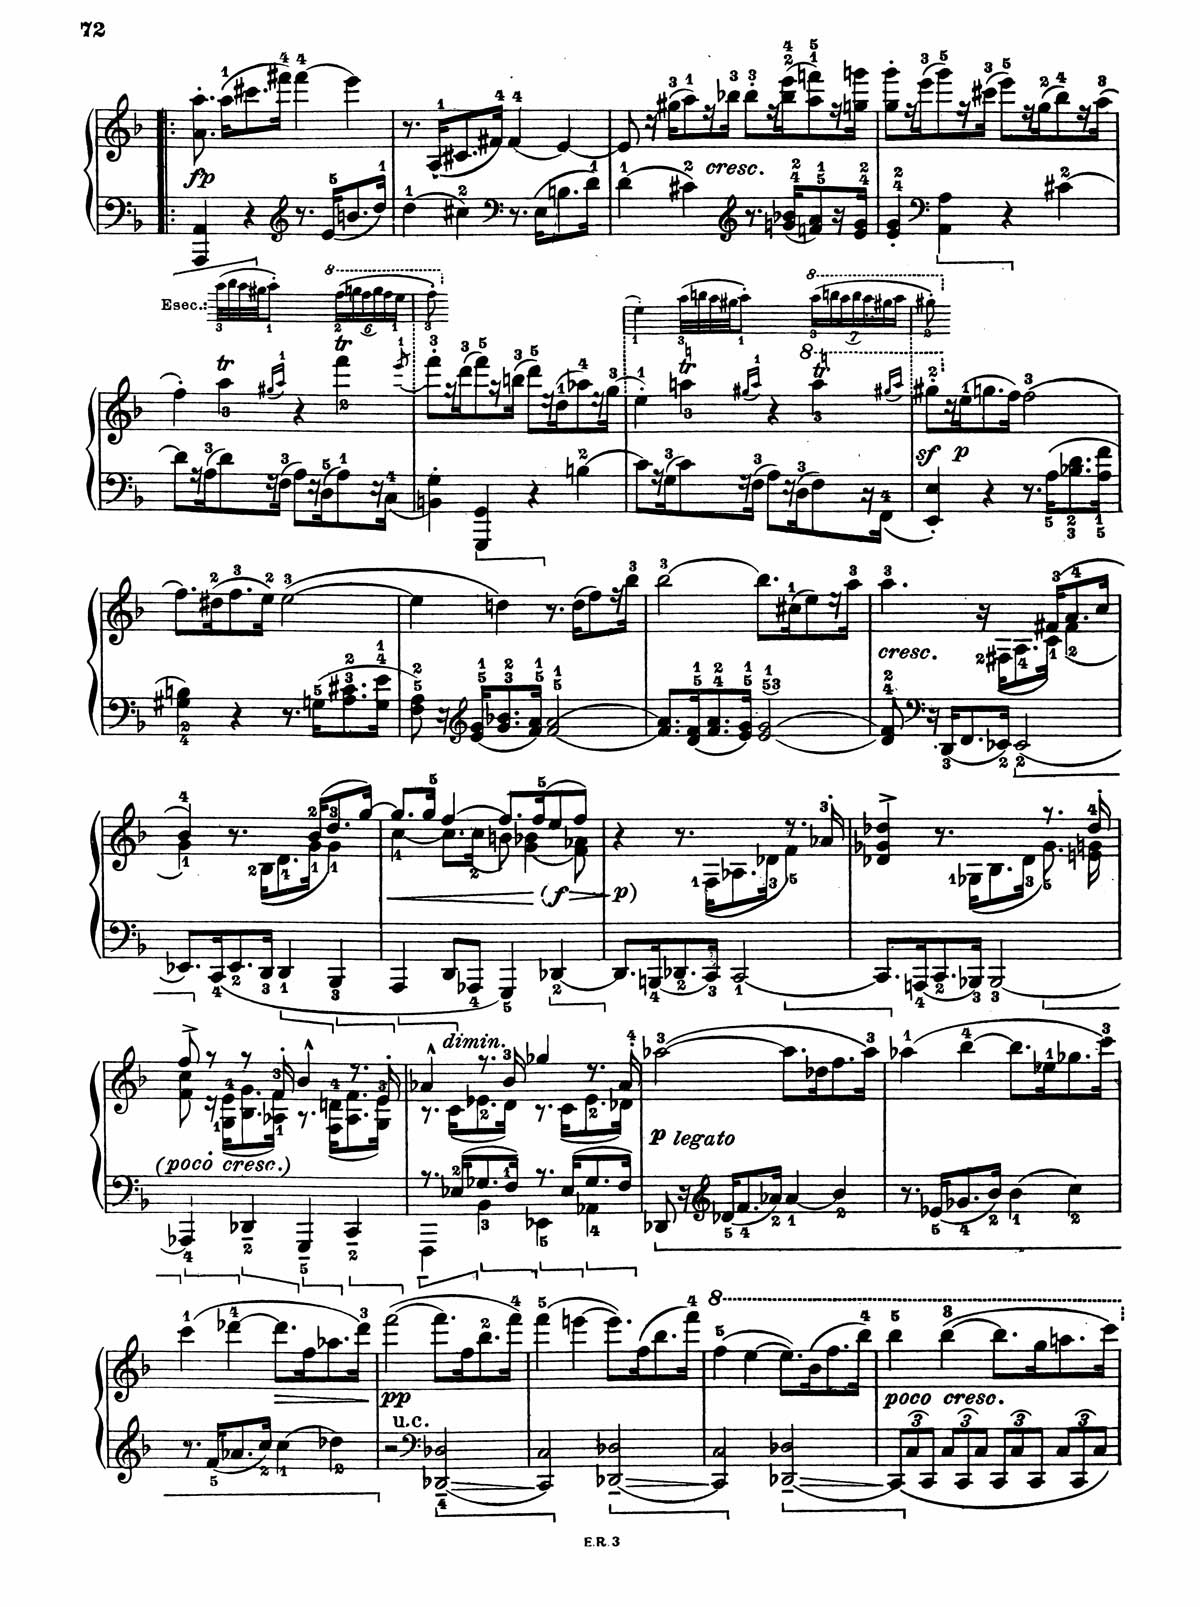 Beethoven Piano Sonata 28-7 sheet music